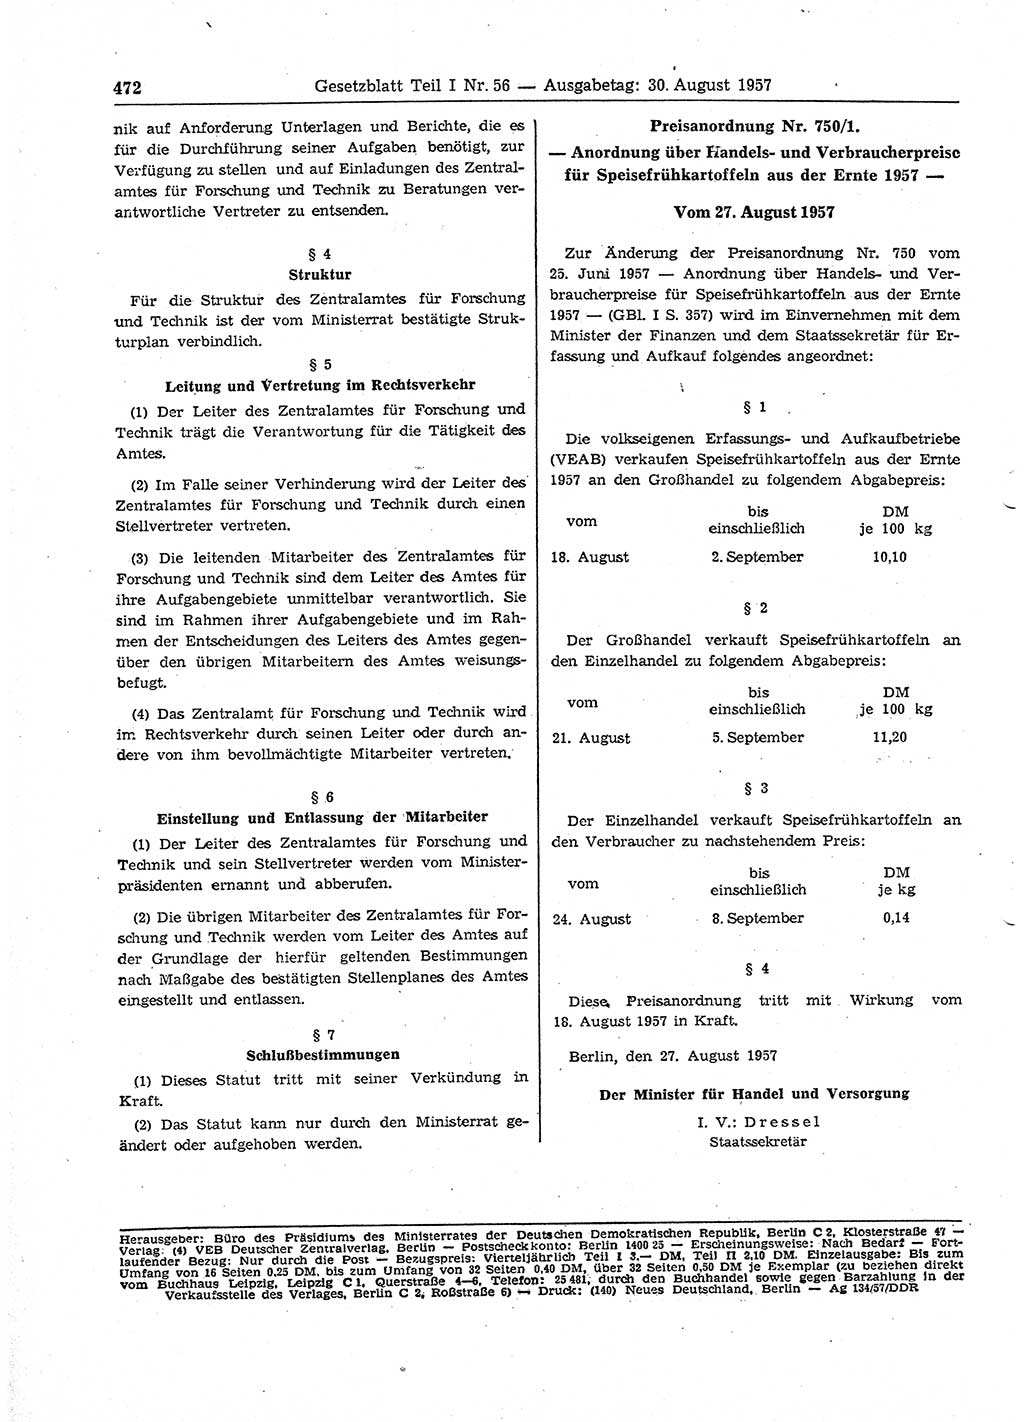 Gesetzblatt (GBl.) der Deutschen Demokratischen Republik (DDR) Teil Ⅰ 1957, Seite 472 (GBl. DDR Ⅰ 1957, S. 472)